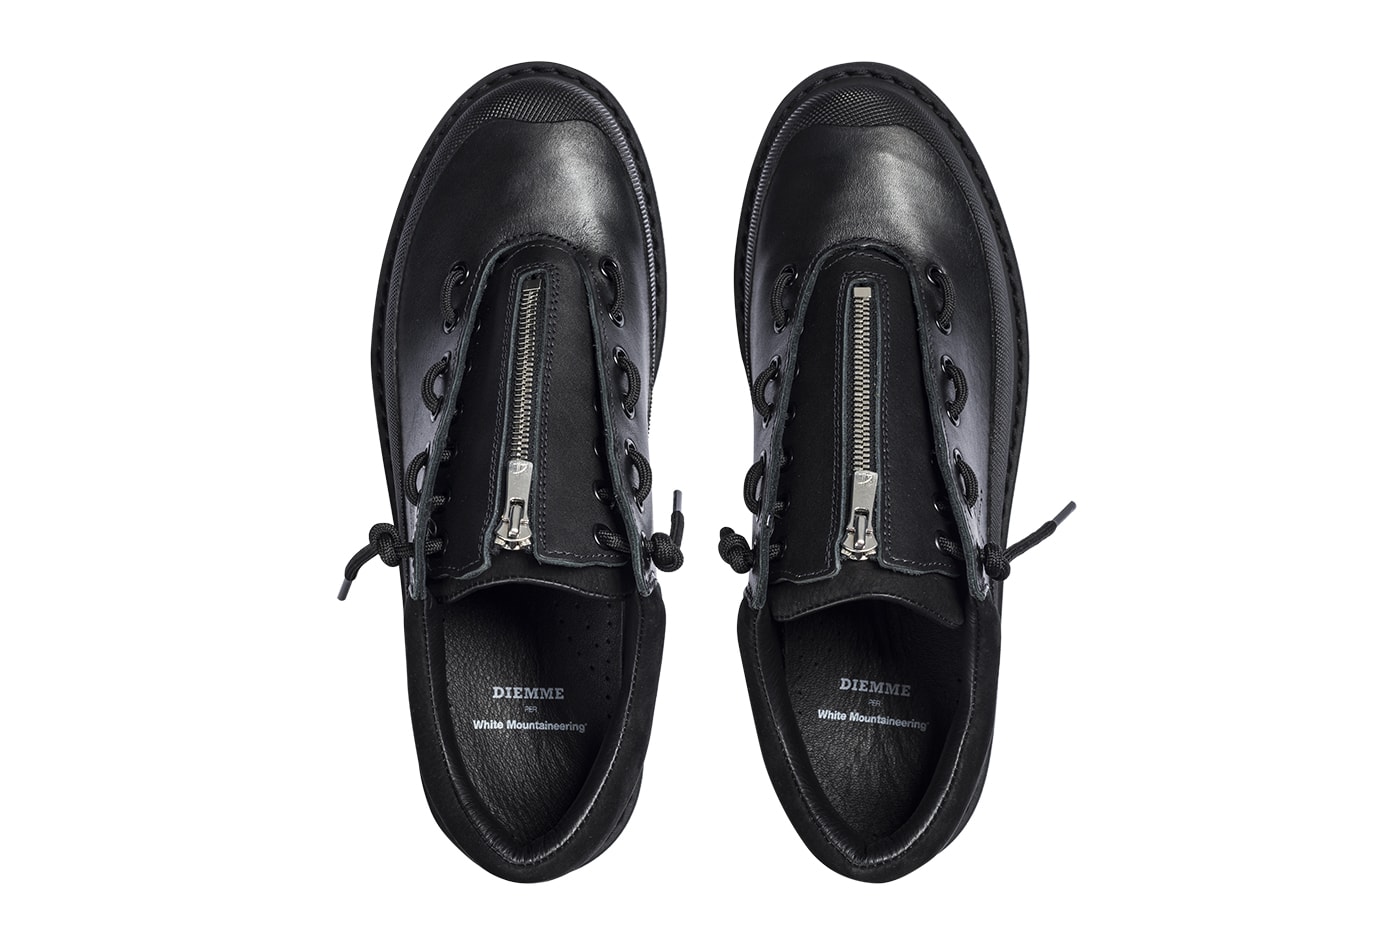 Diemme Footwear x White Mountaineering Footwear Collaboration Release Info